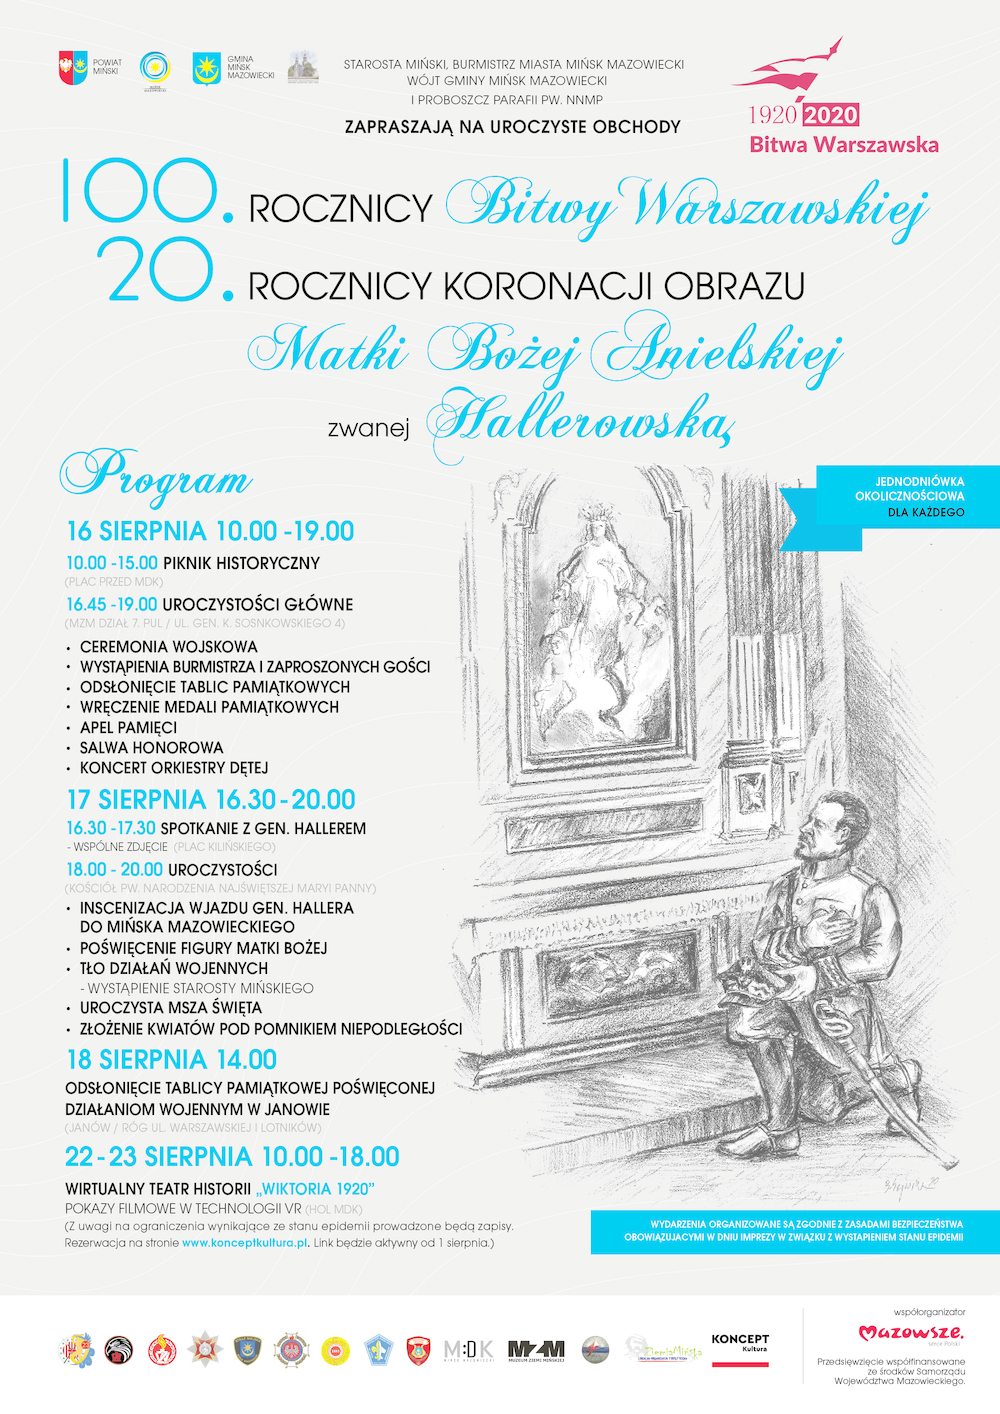 100. rocznica Bitwy Warszawskiej i 20. rocznica koronacji obrazu Matki Bożej Anielskiej zwanej Hallerowską